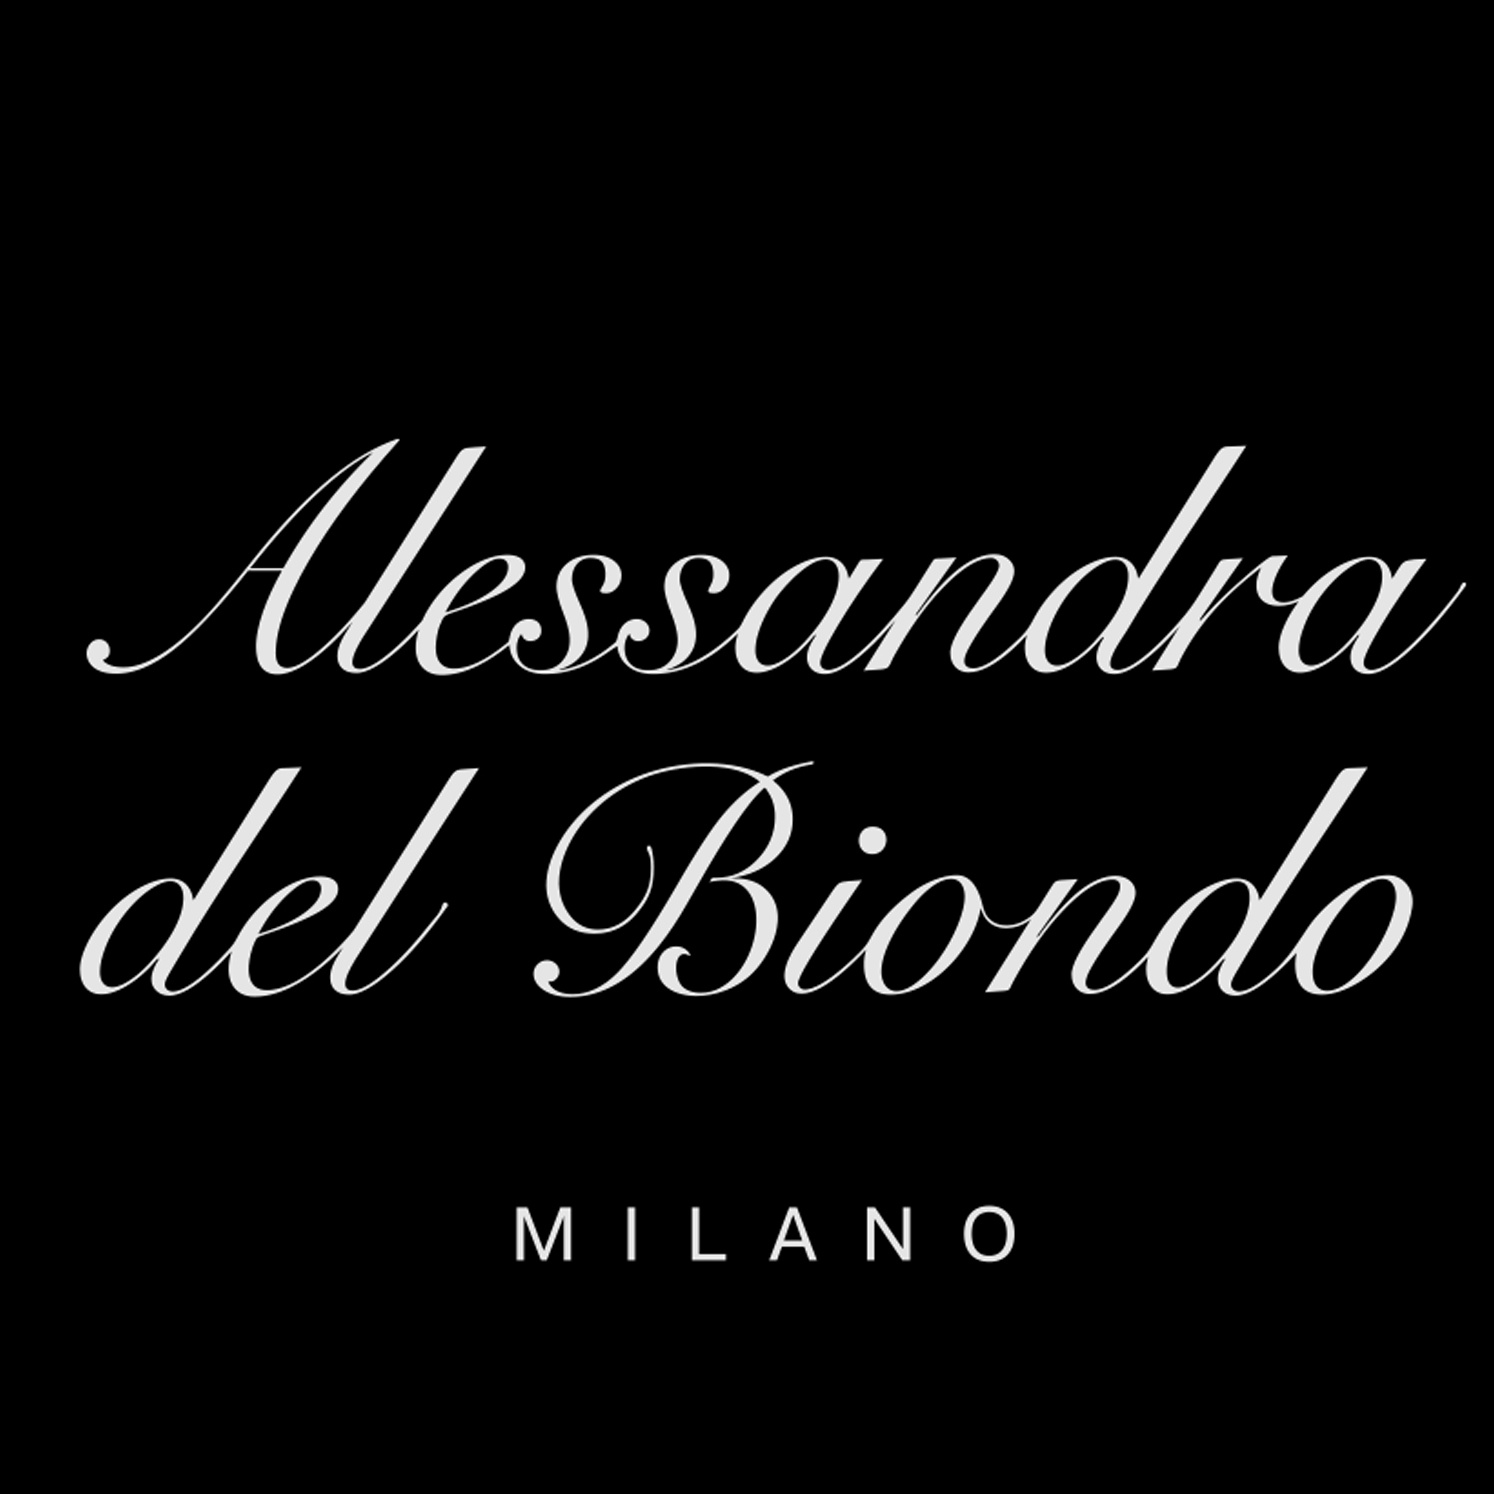 Alessandra del Biondo